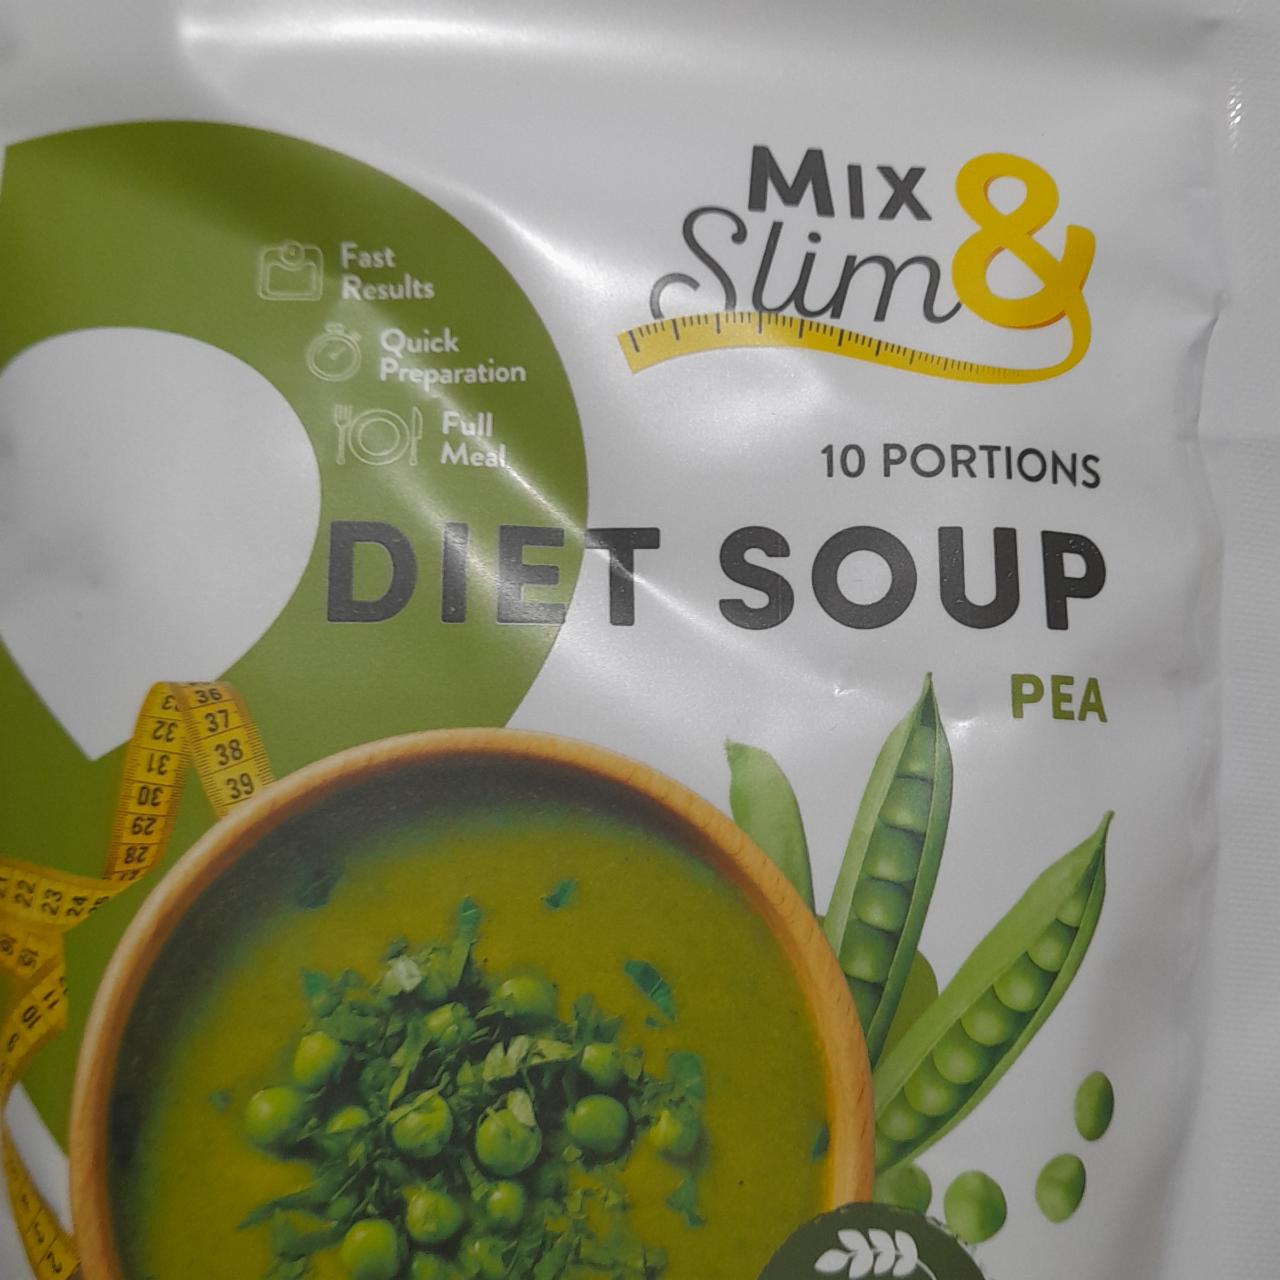 Fotografie - Diet soup Pea Mix & Slim